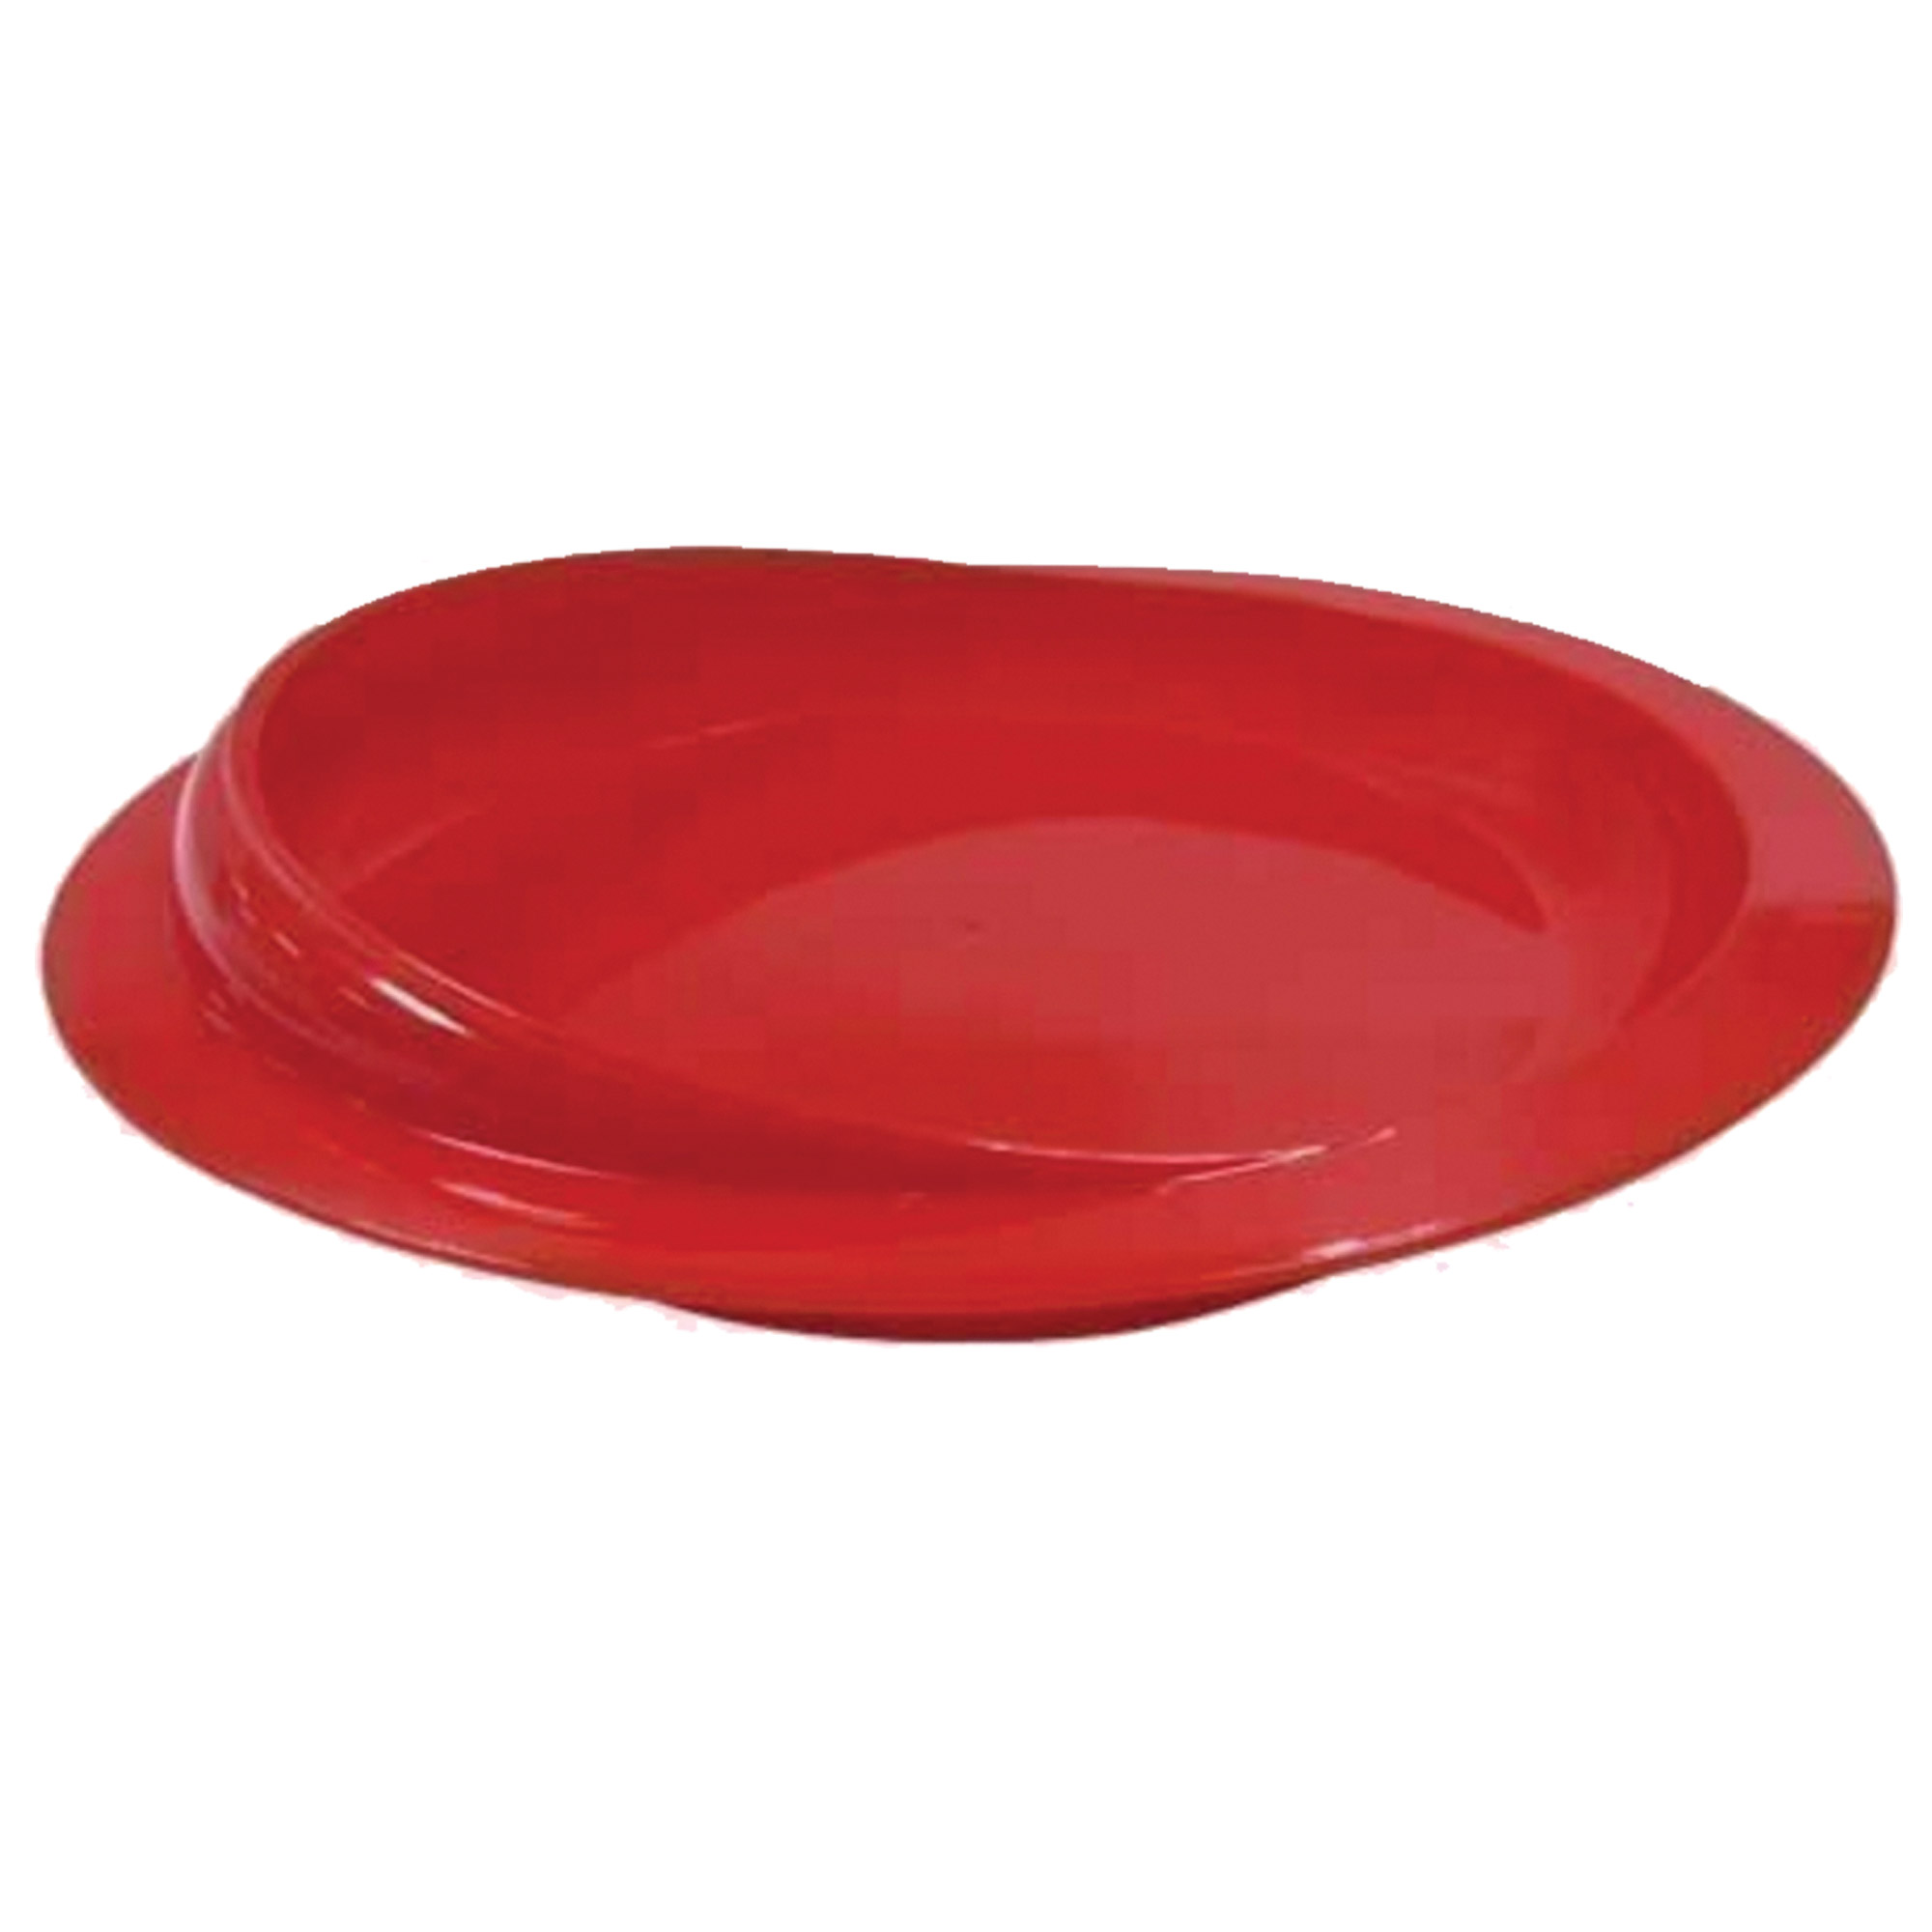 Scoop Plate - RED - Each